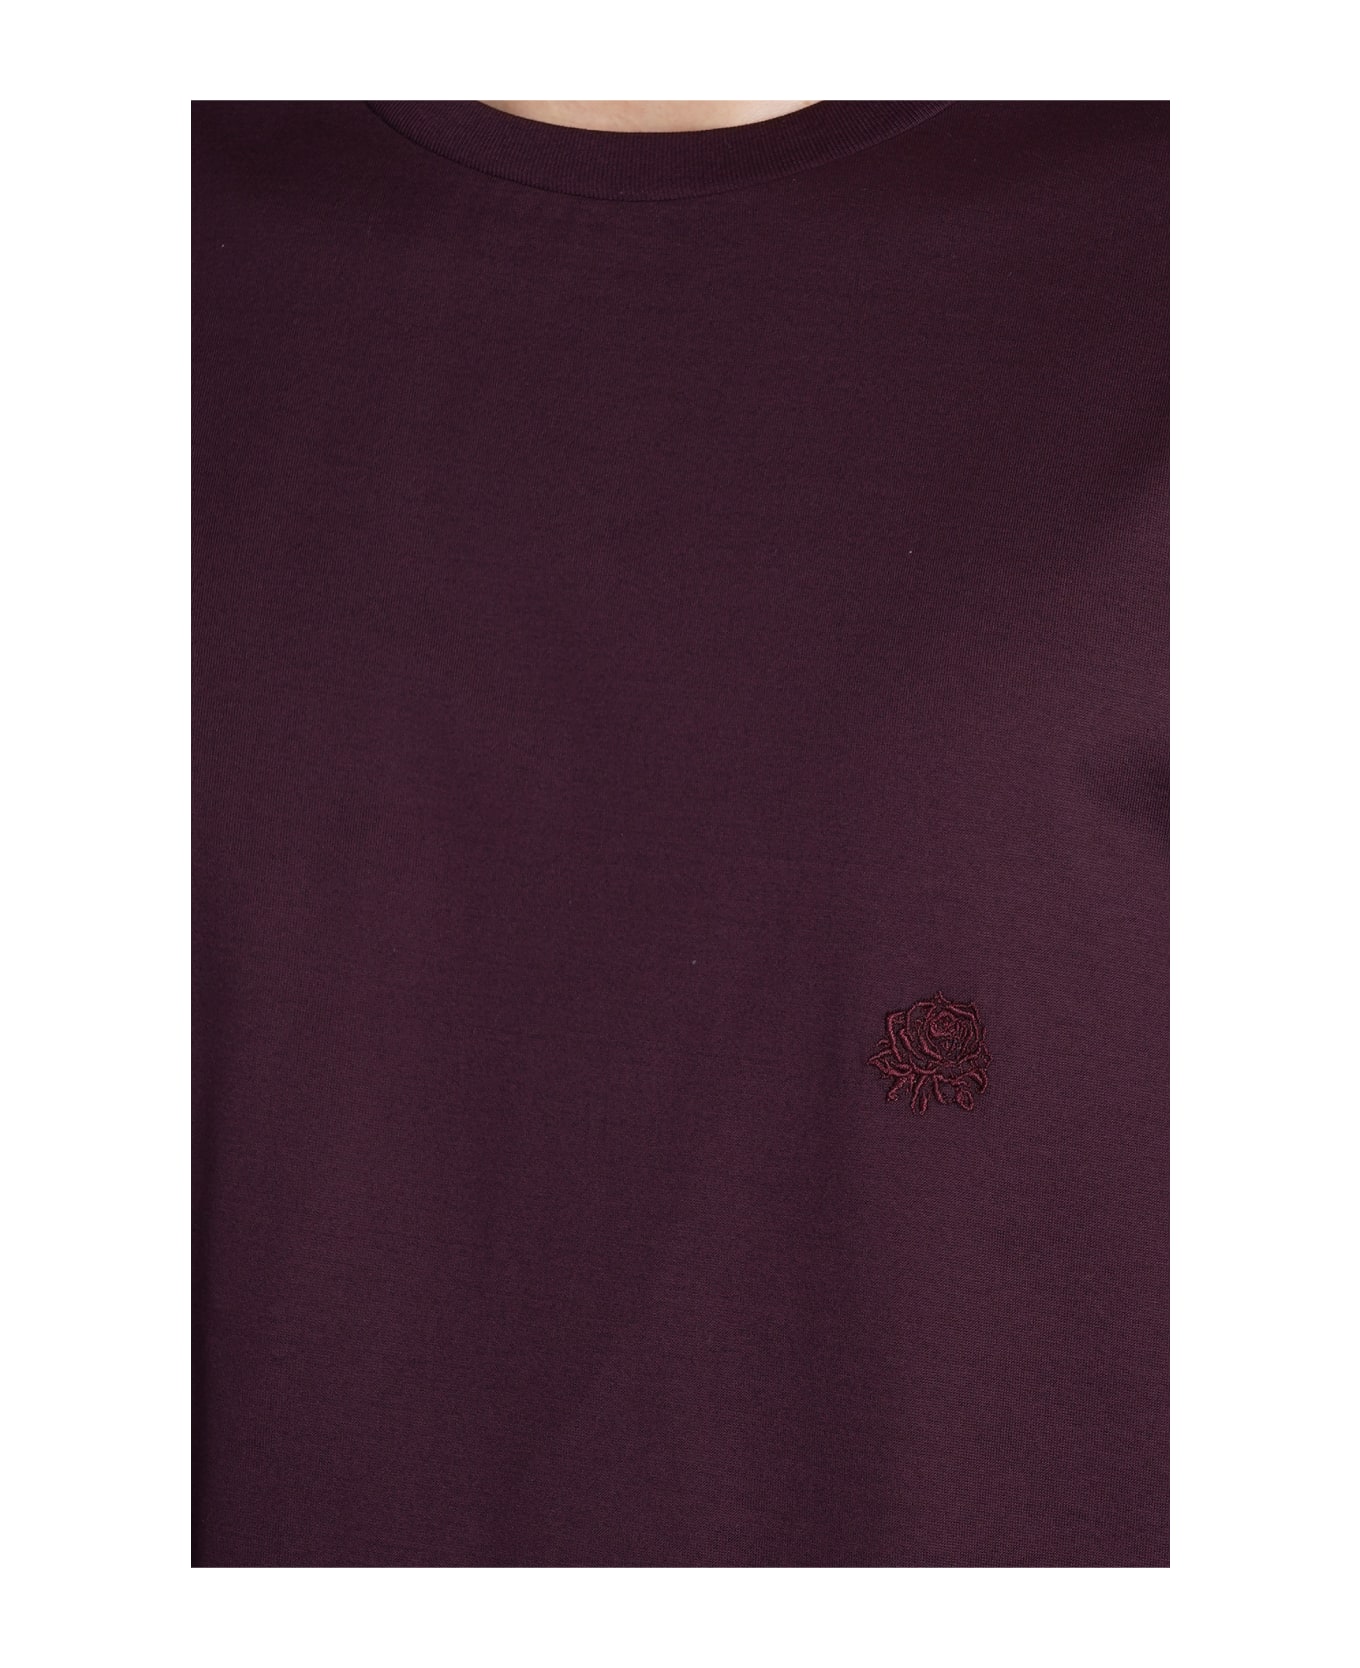 Low Brand B150 Rose T-shirt In Bordeaux Cotton - bordeaux